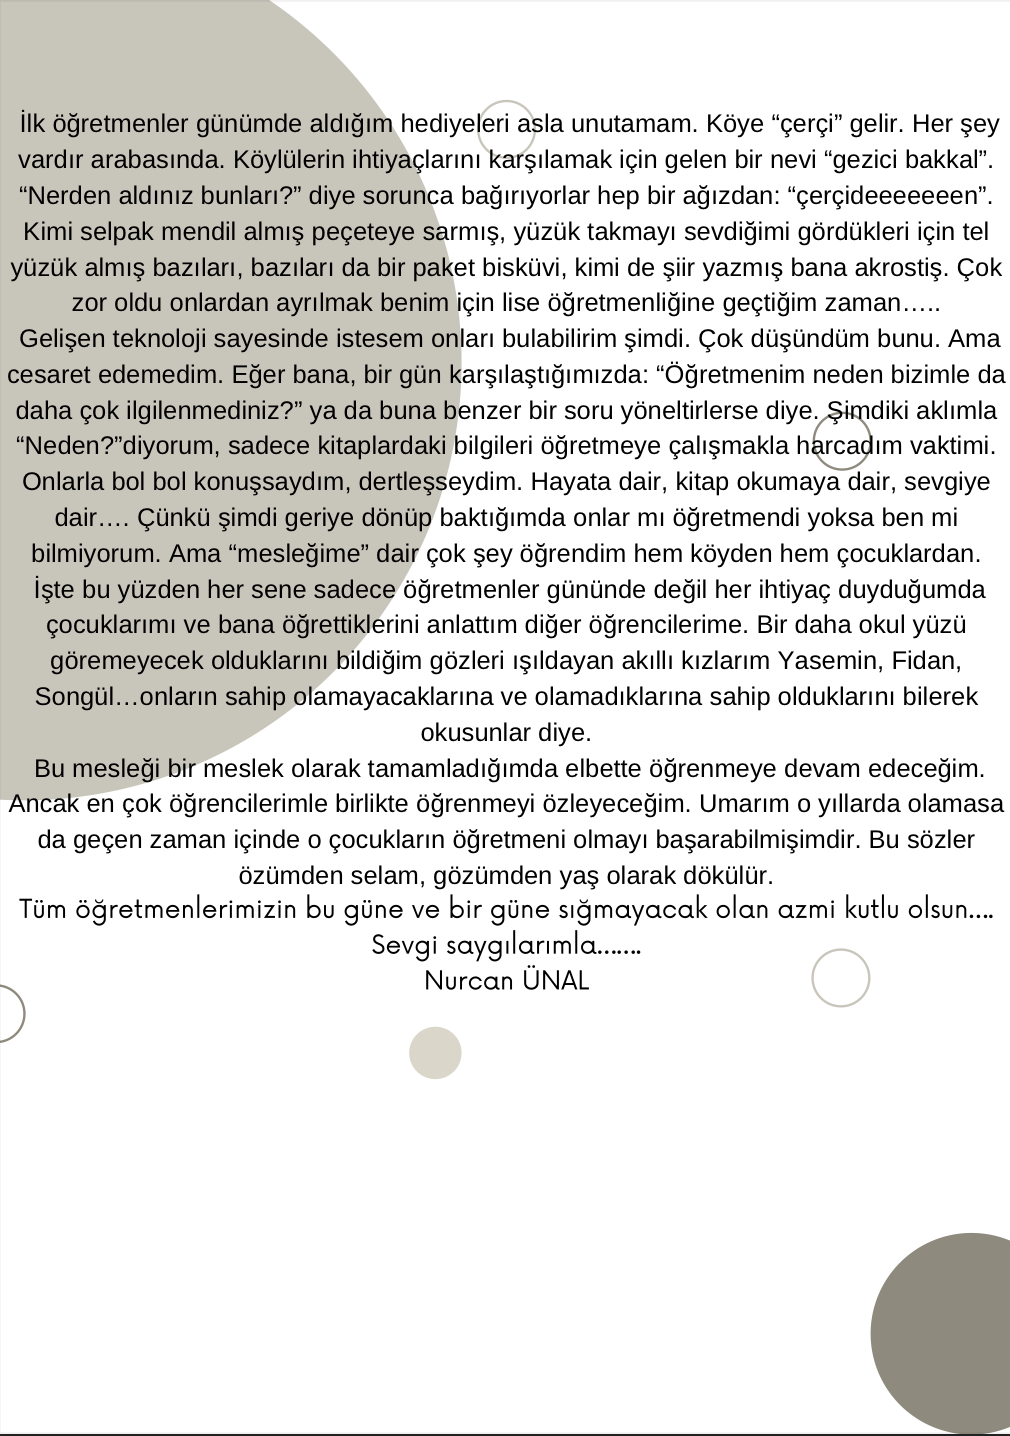 Kasım Rüzgarı by Süleyman Baran Dazıroğlu - Illustrated by Keçiören Sosyal Bilimler Lisesi - Ourboox.com